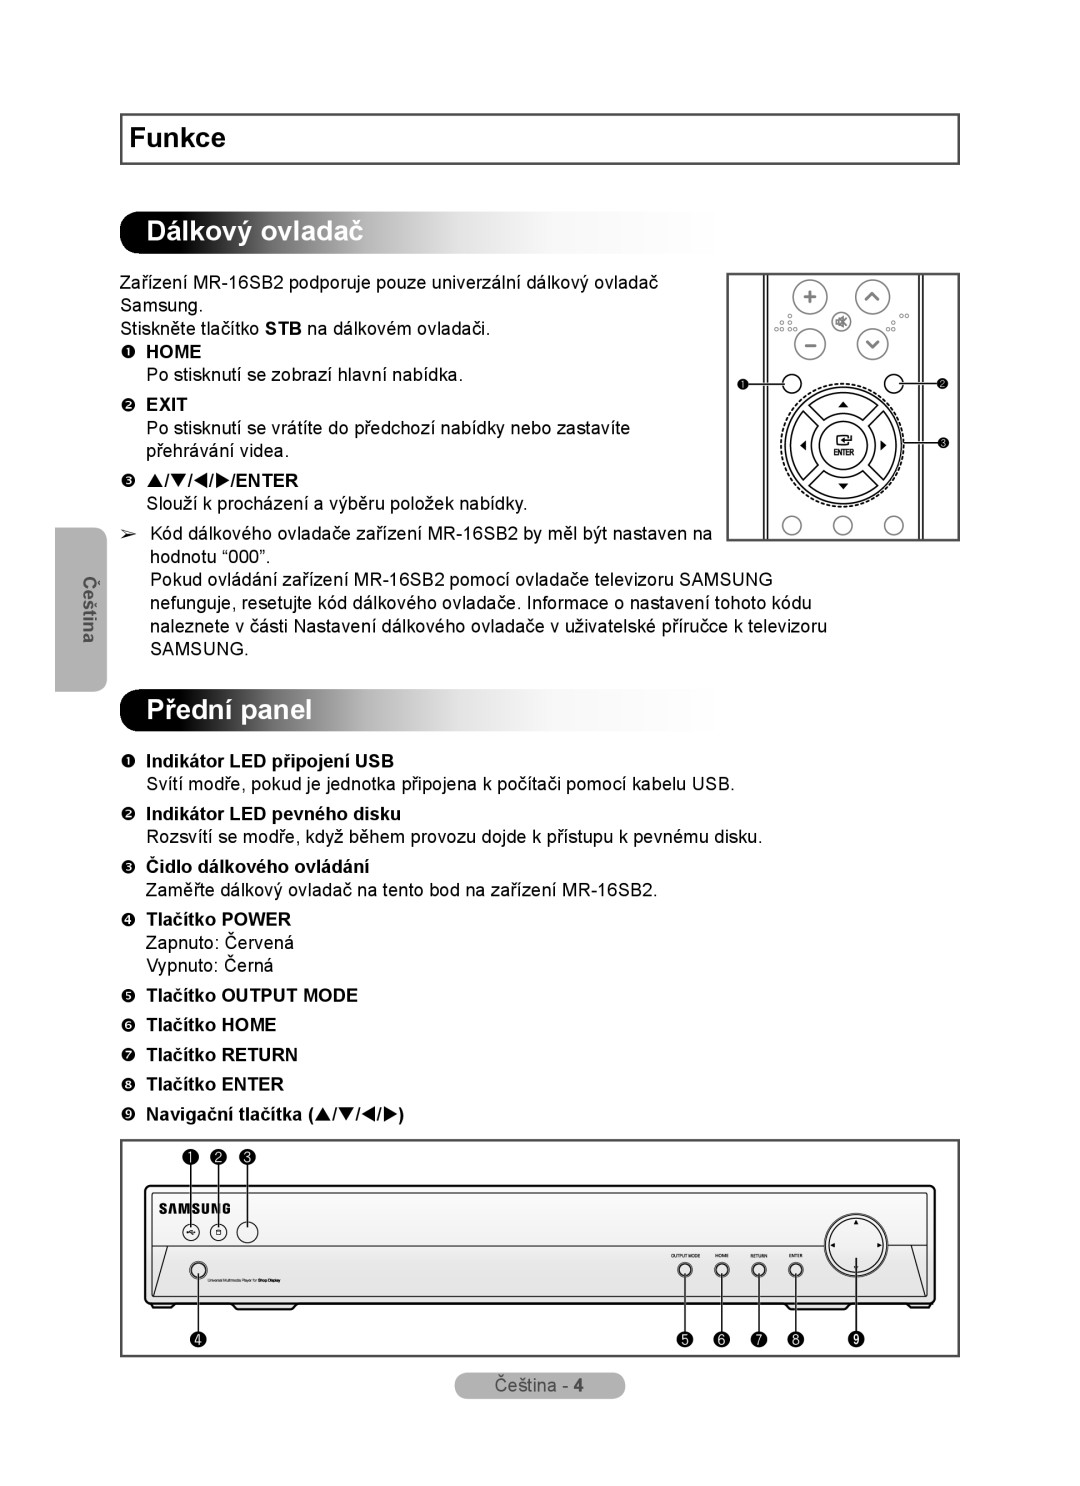 Samsung MR-16SB2 manual Dálkový ovladač, Přední panel,  Indikátor LED připojení USB,  Indikátor LED pevného disku, Funkce 